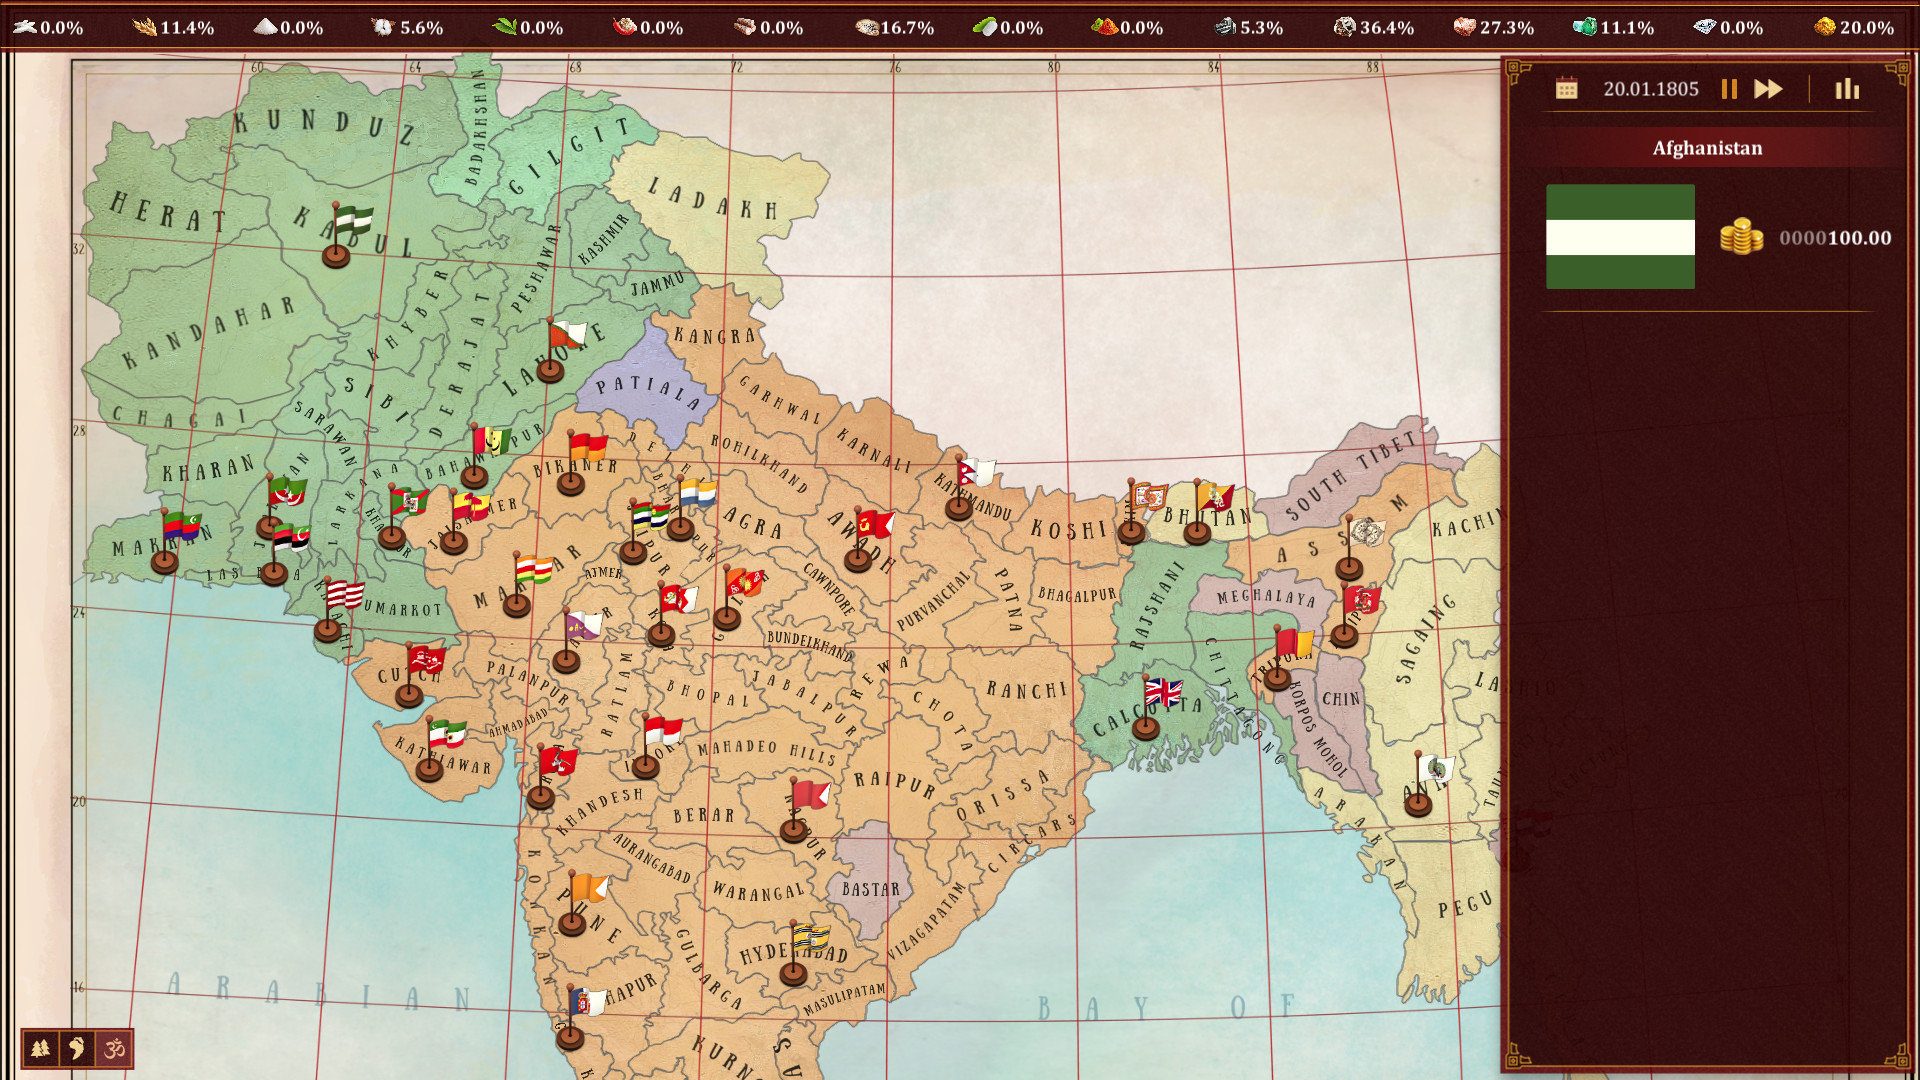 Imperialism: Fate of India screenshot